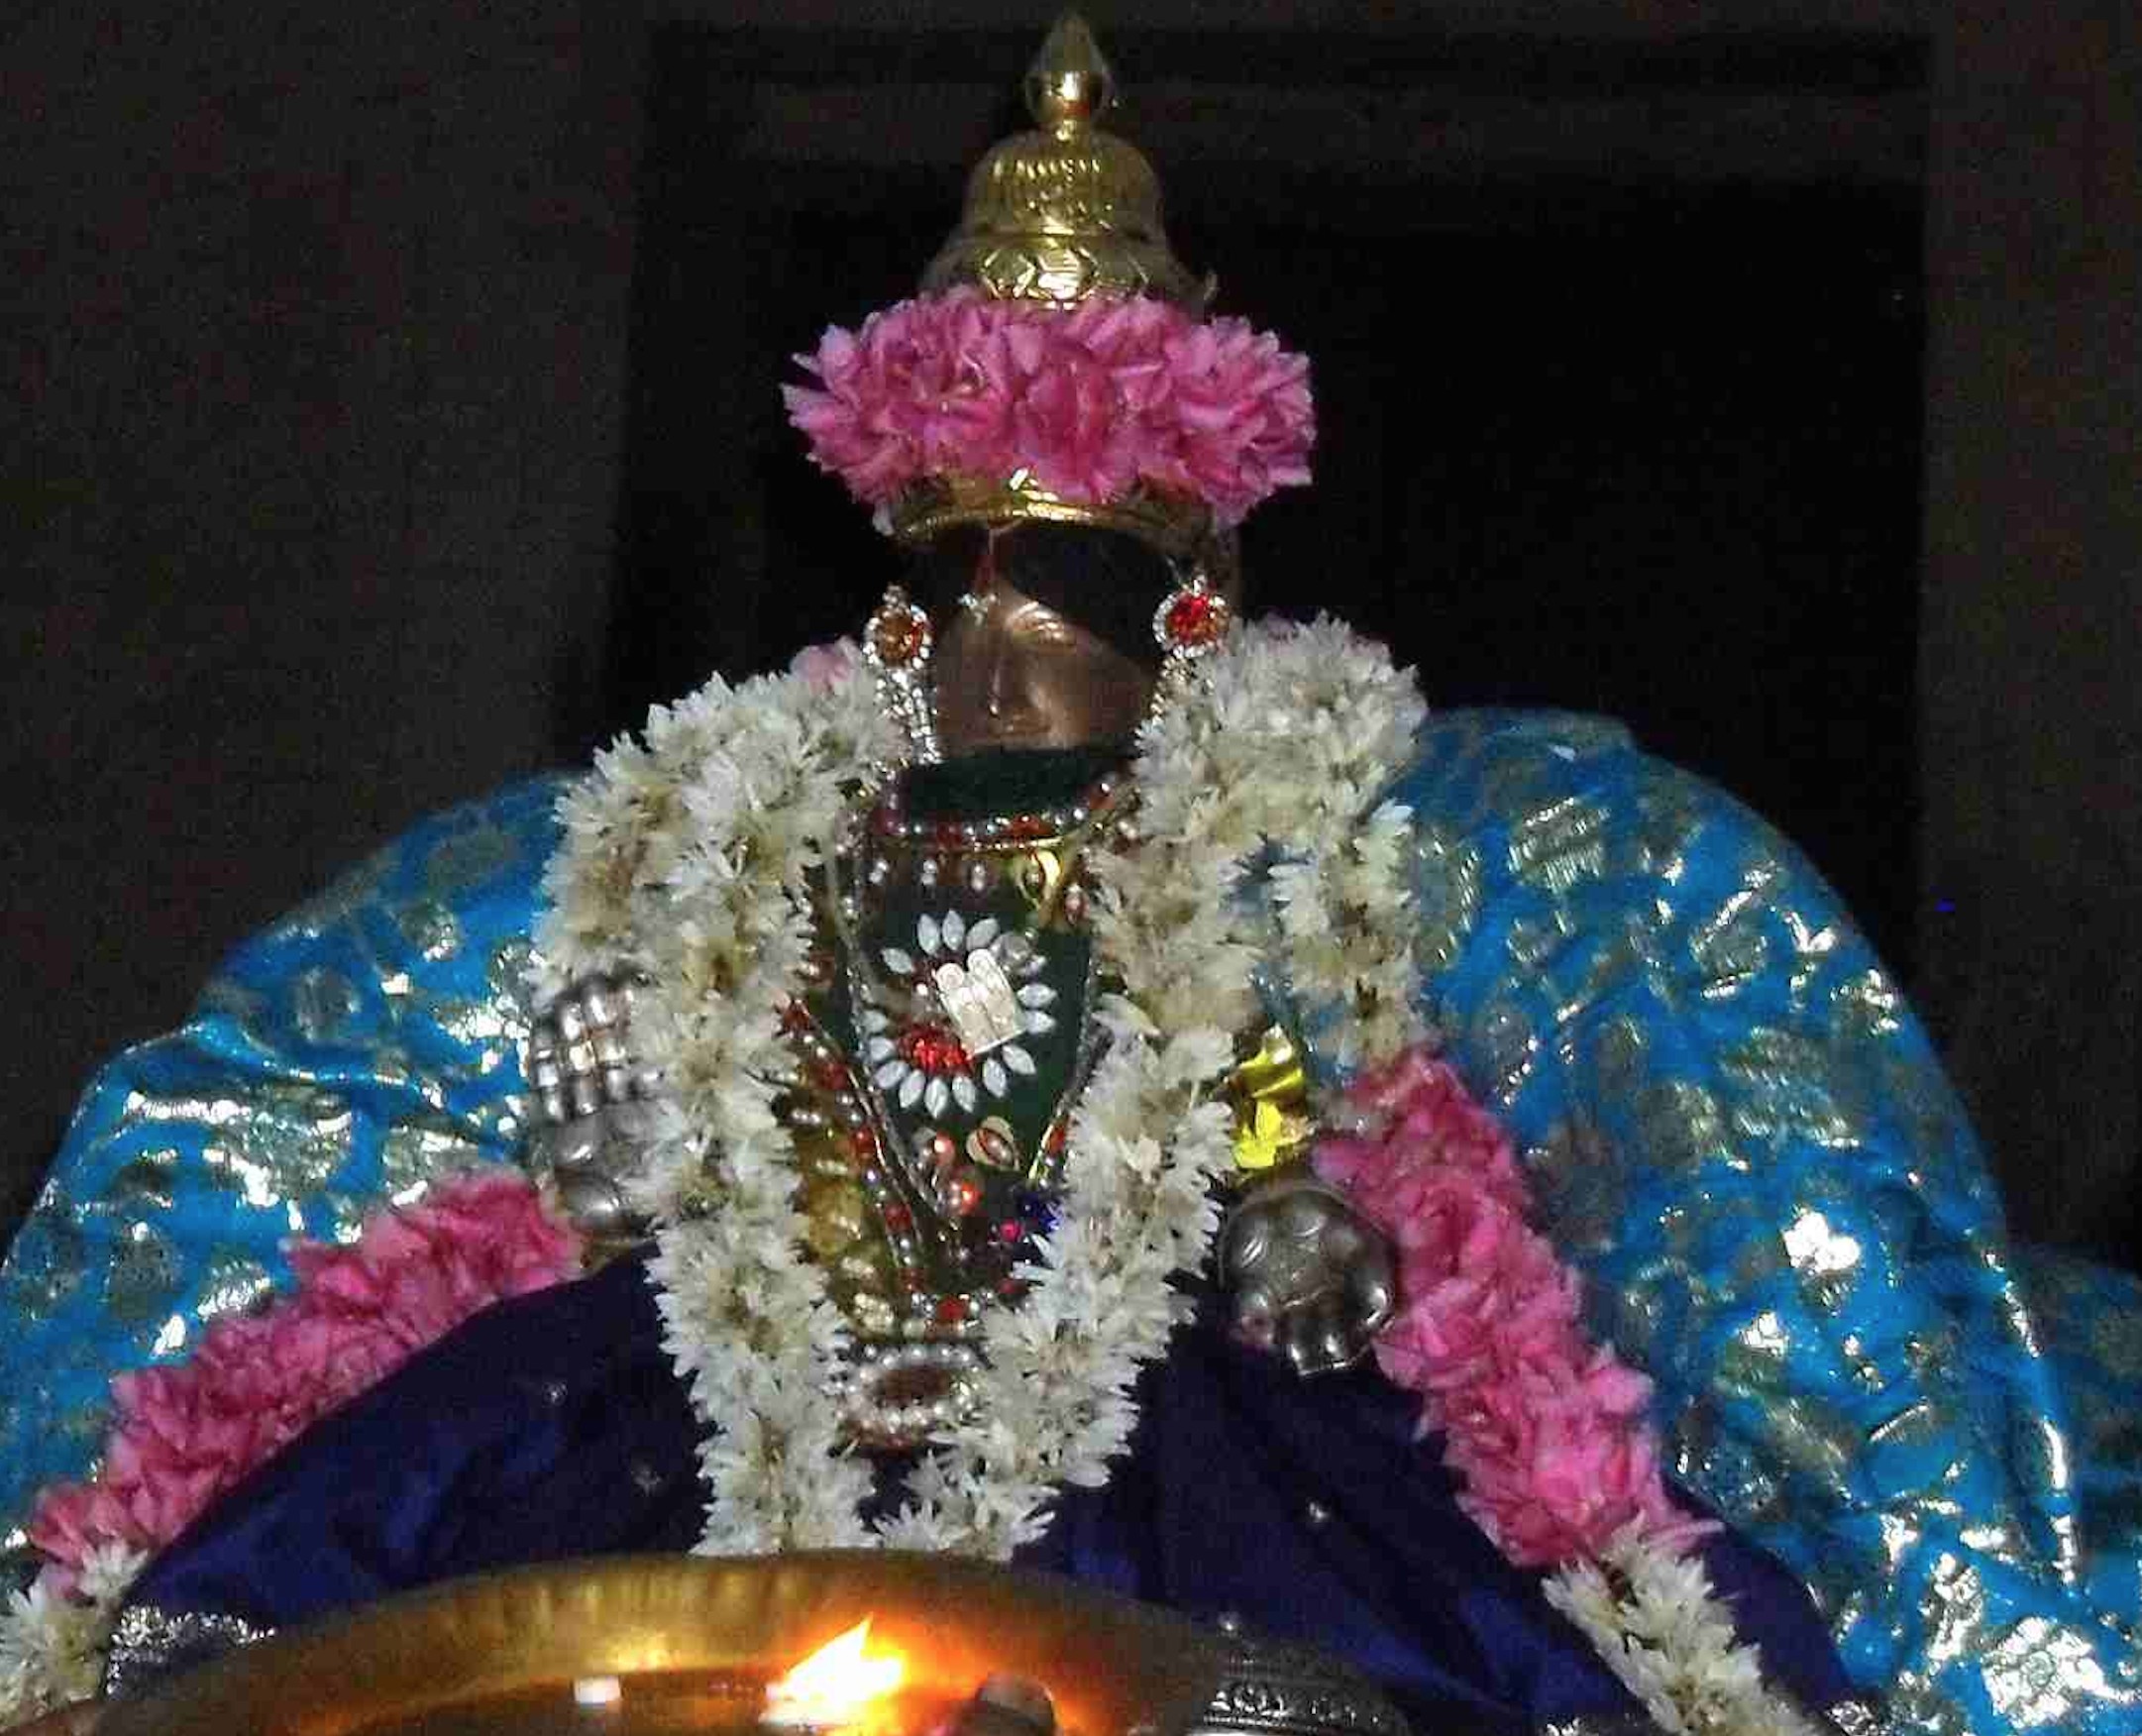 Thirukannamangai Abhishekavalli Thayar Purappadu